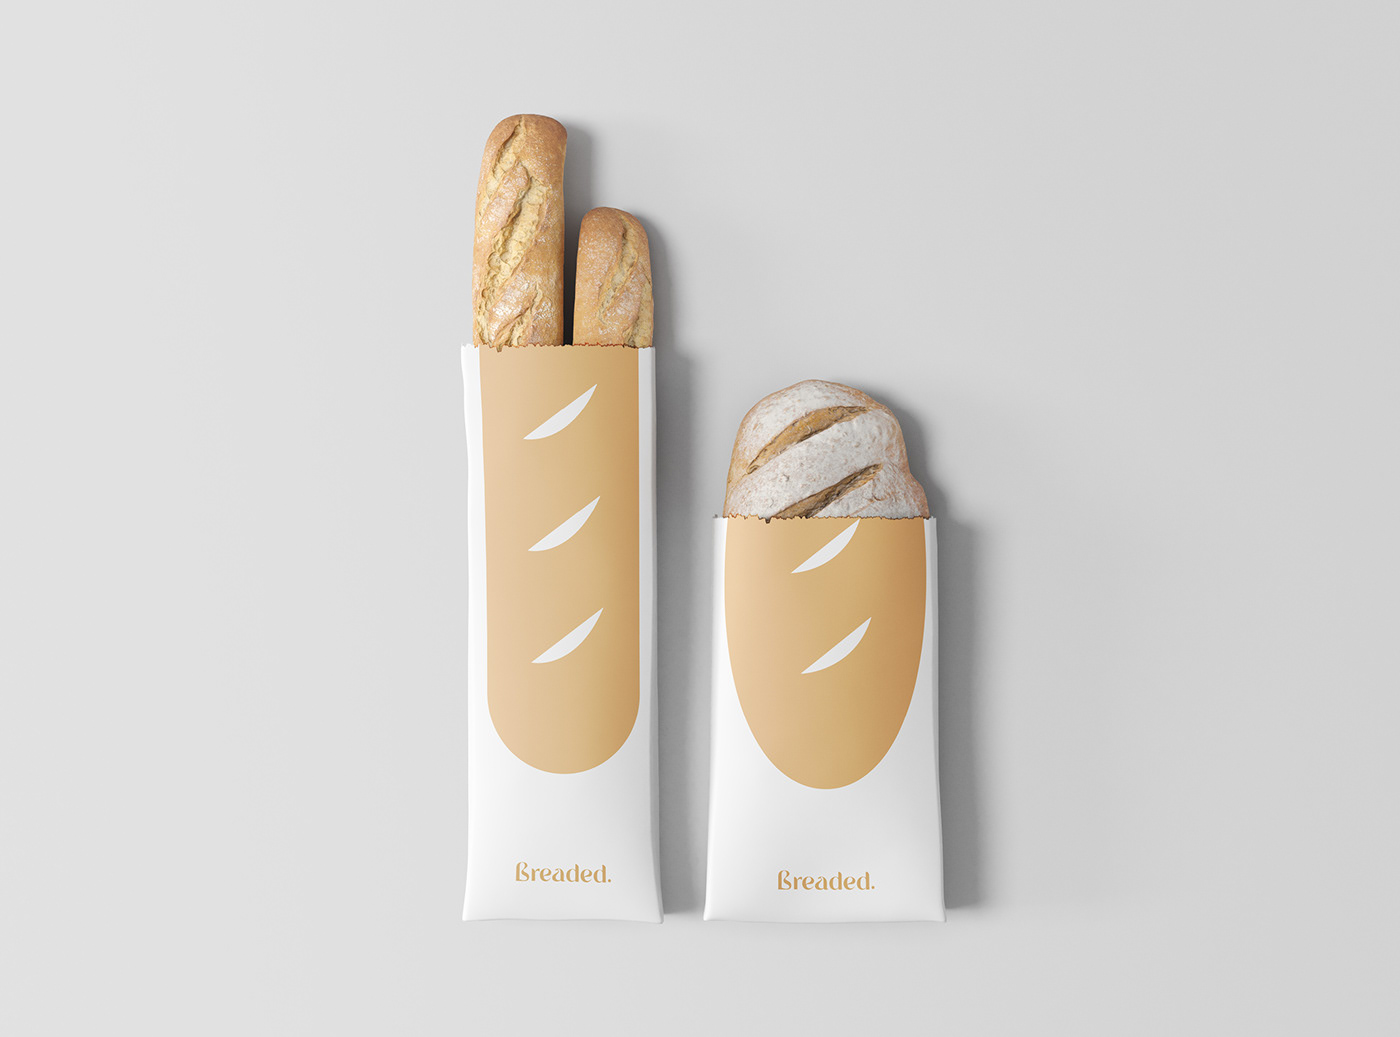 baker brand identity branding  bread Food  logo Packaging visual identity visuals